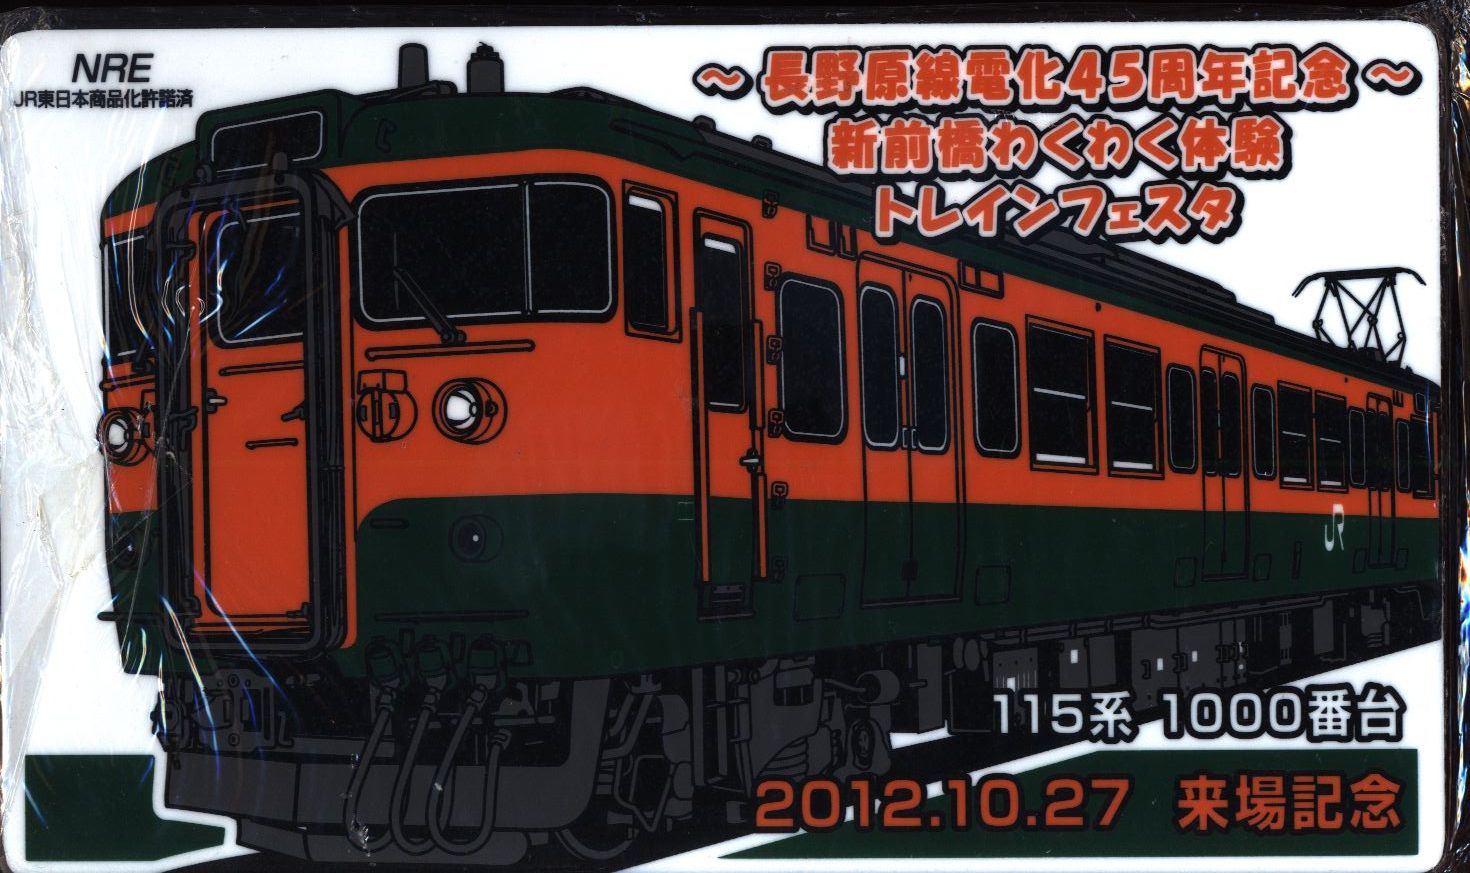 JR東日本 長野原線電化45周年記念グッズ - 鉄道